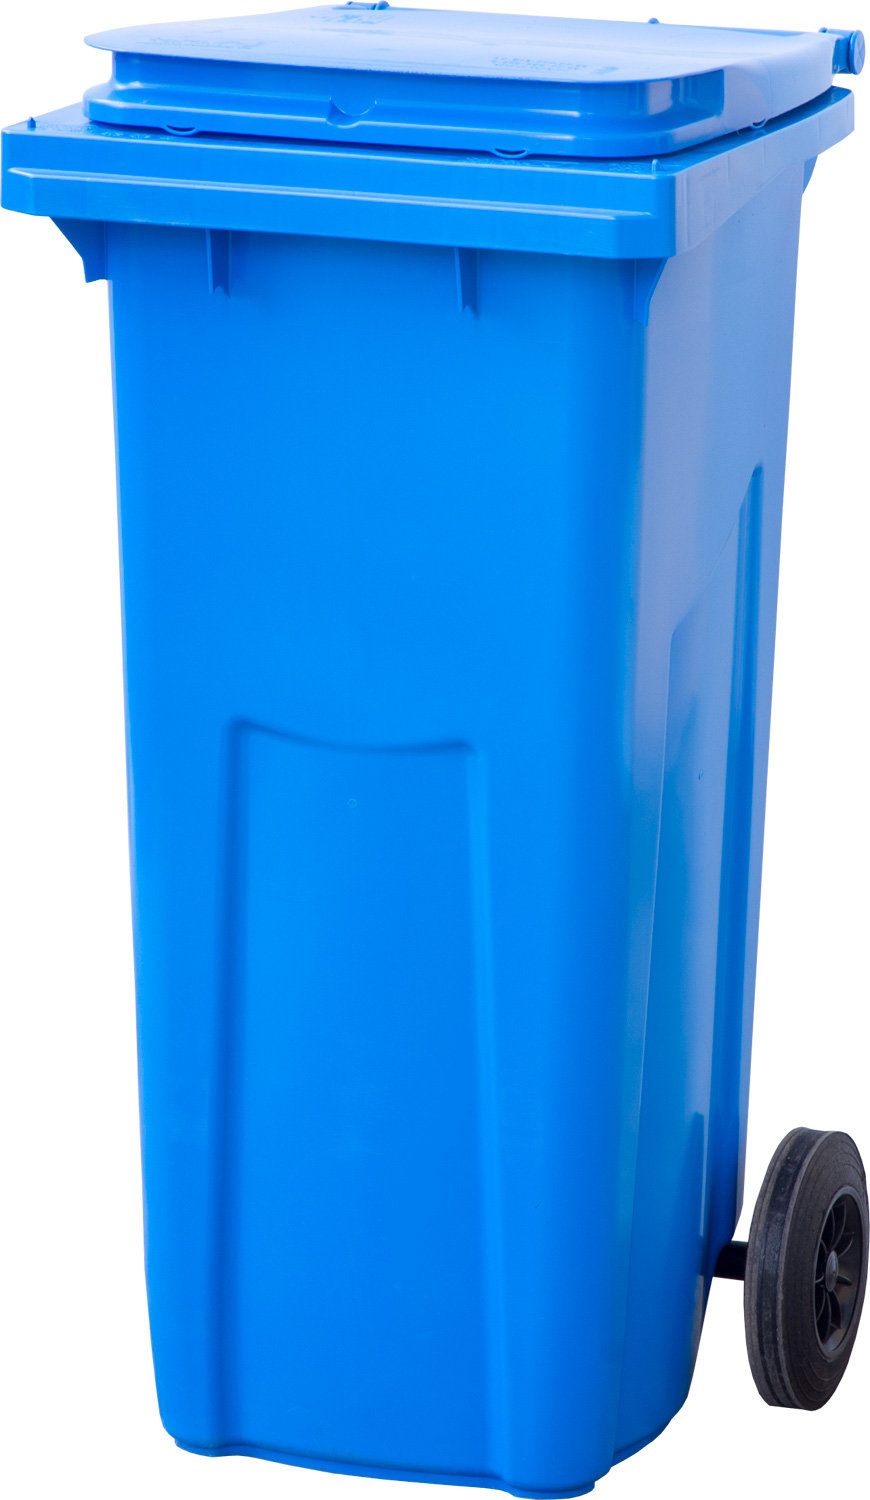 Мусорный контейнер МКТ 120 синий 550x480x960 мм Полиэтилен низкого давления (HDPE) 120 л